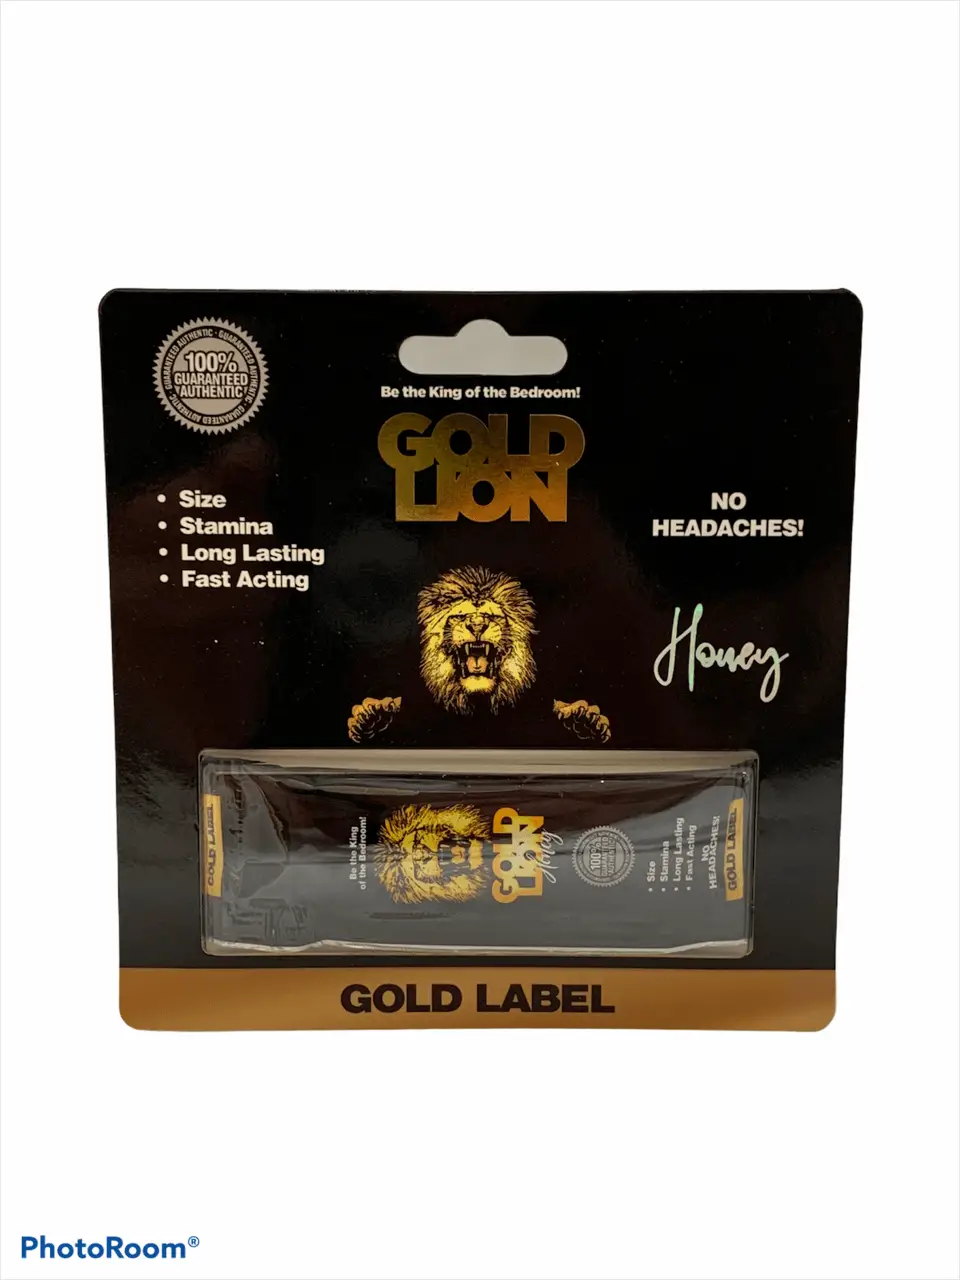 Gold Lion Honey Male Enhancement